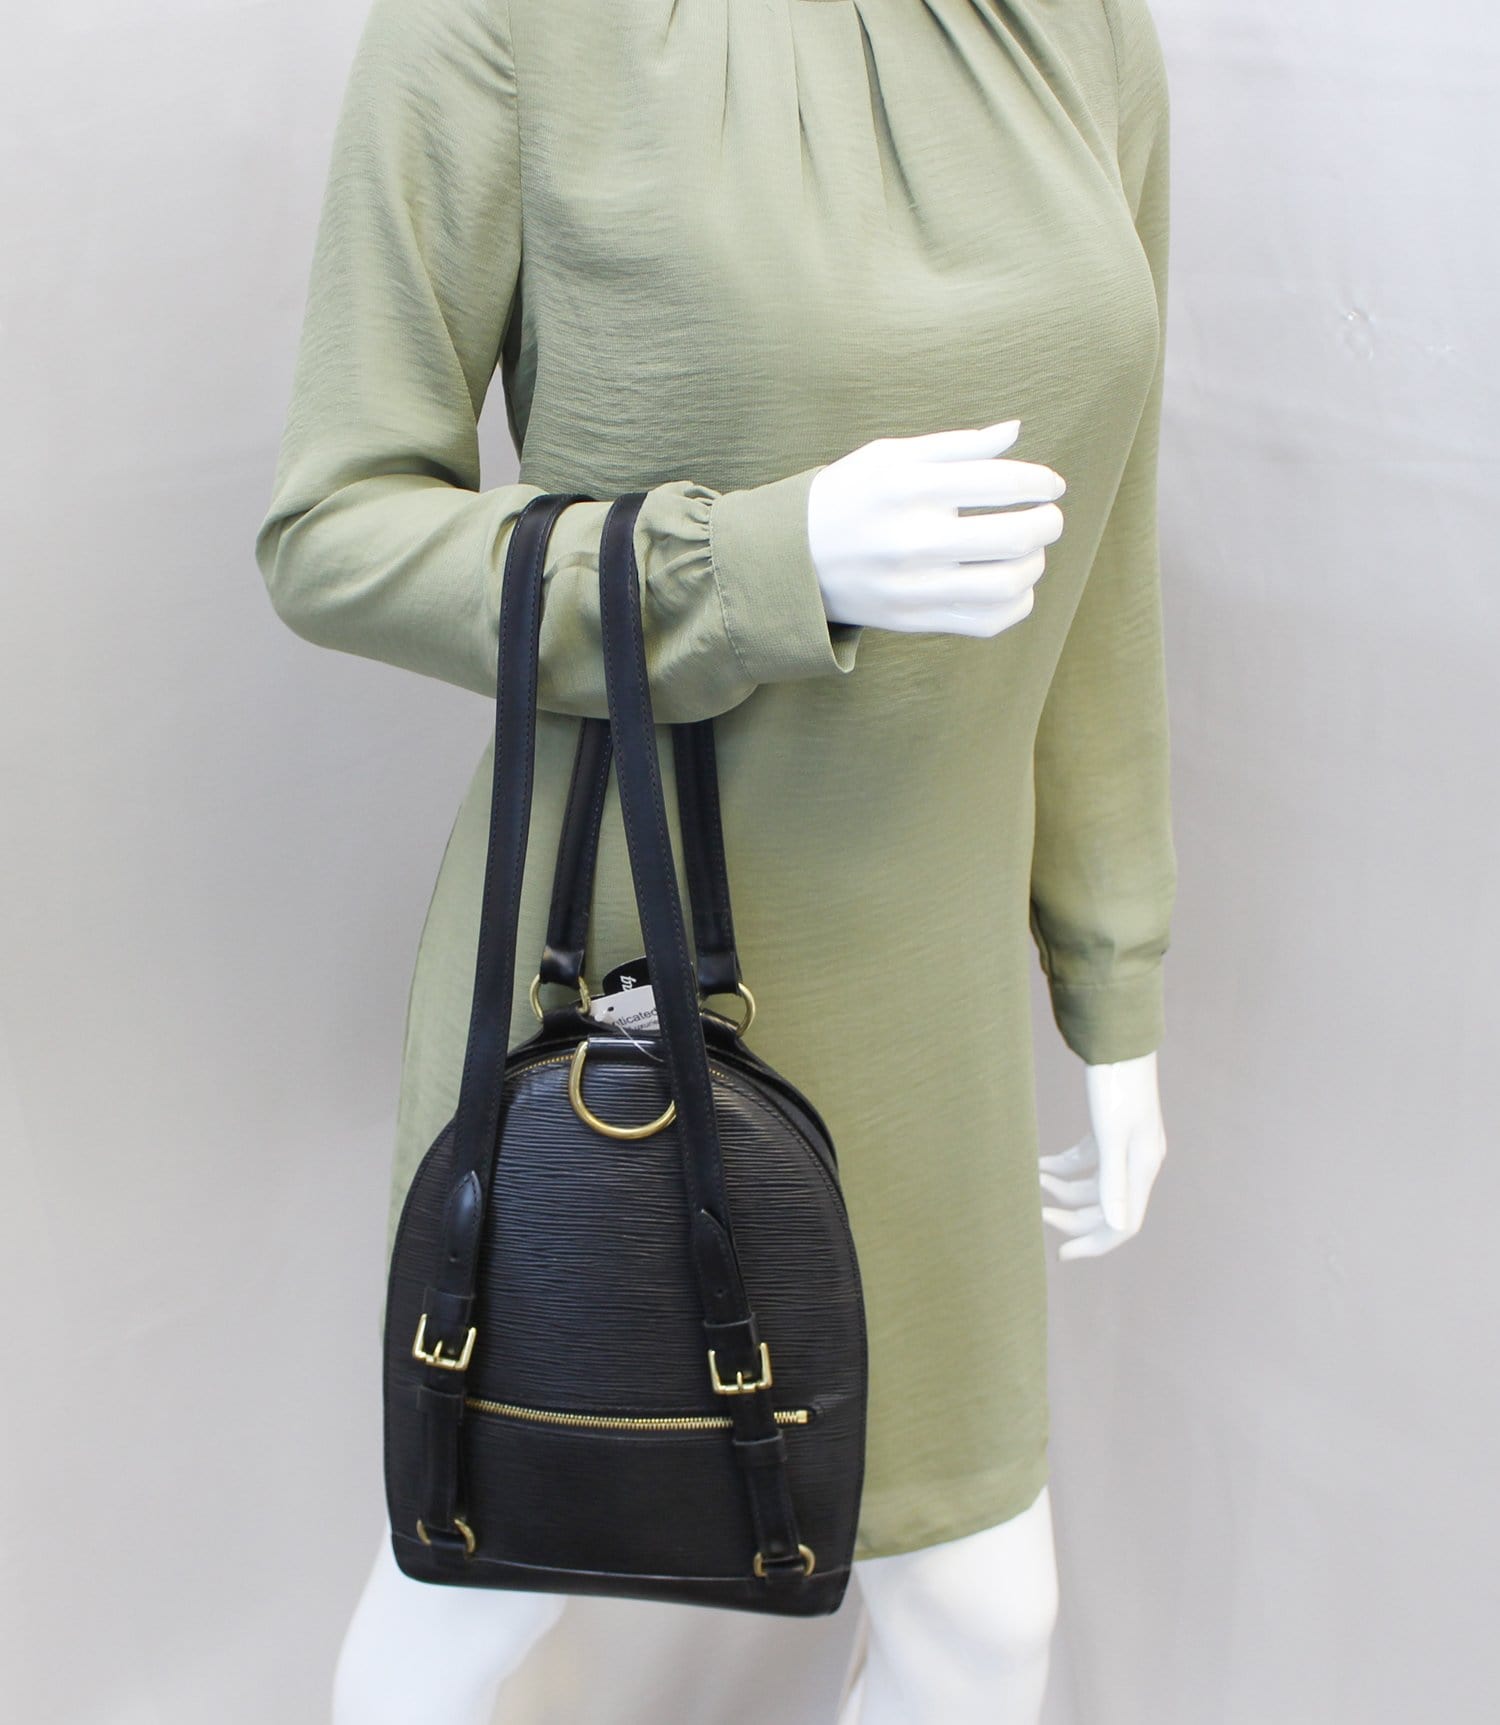 Louis Vuitton Black Epi Leather Mabillon Backpack Bag Louis Vuitton